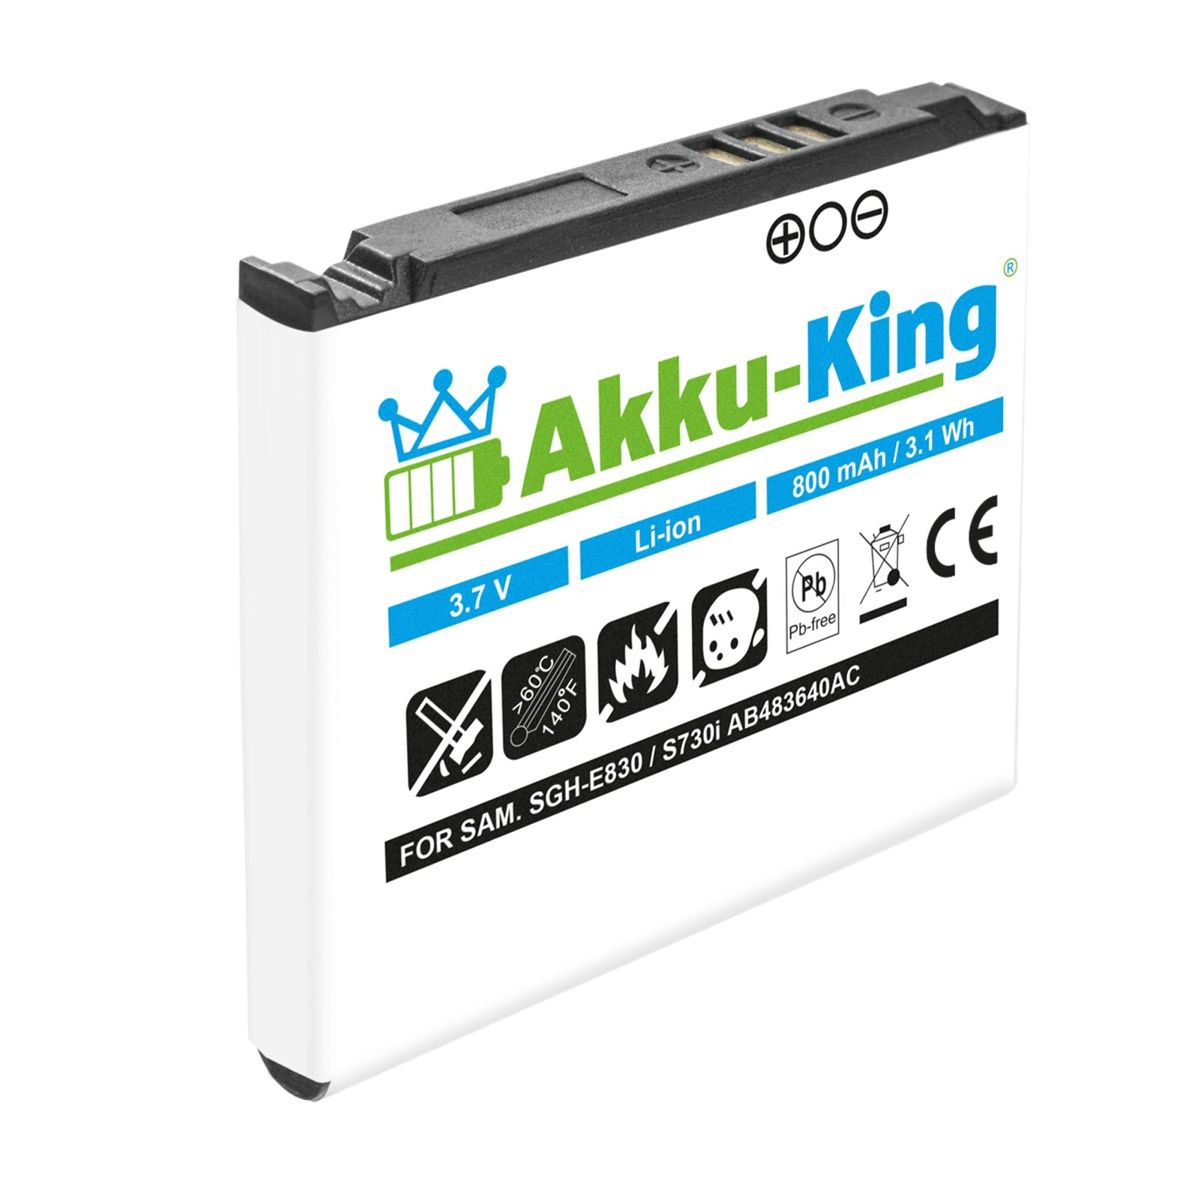 AKKU-KING Akku Handy-Akku, 3.7 Samsung mit Li-Ion 800mAh Volt, AB483640AE kompatibel